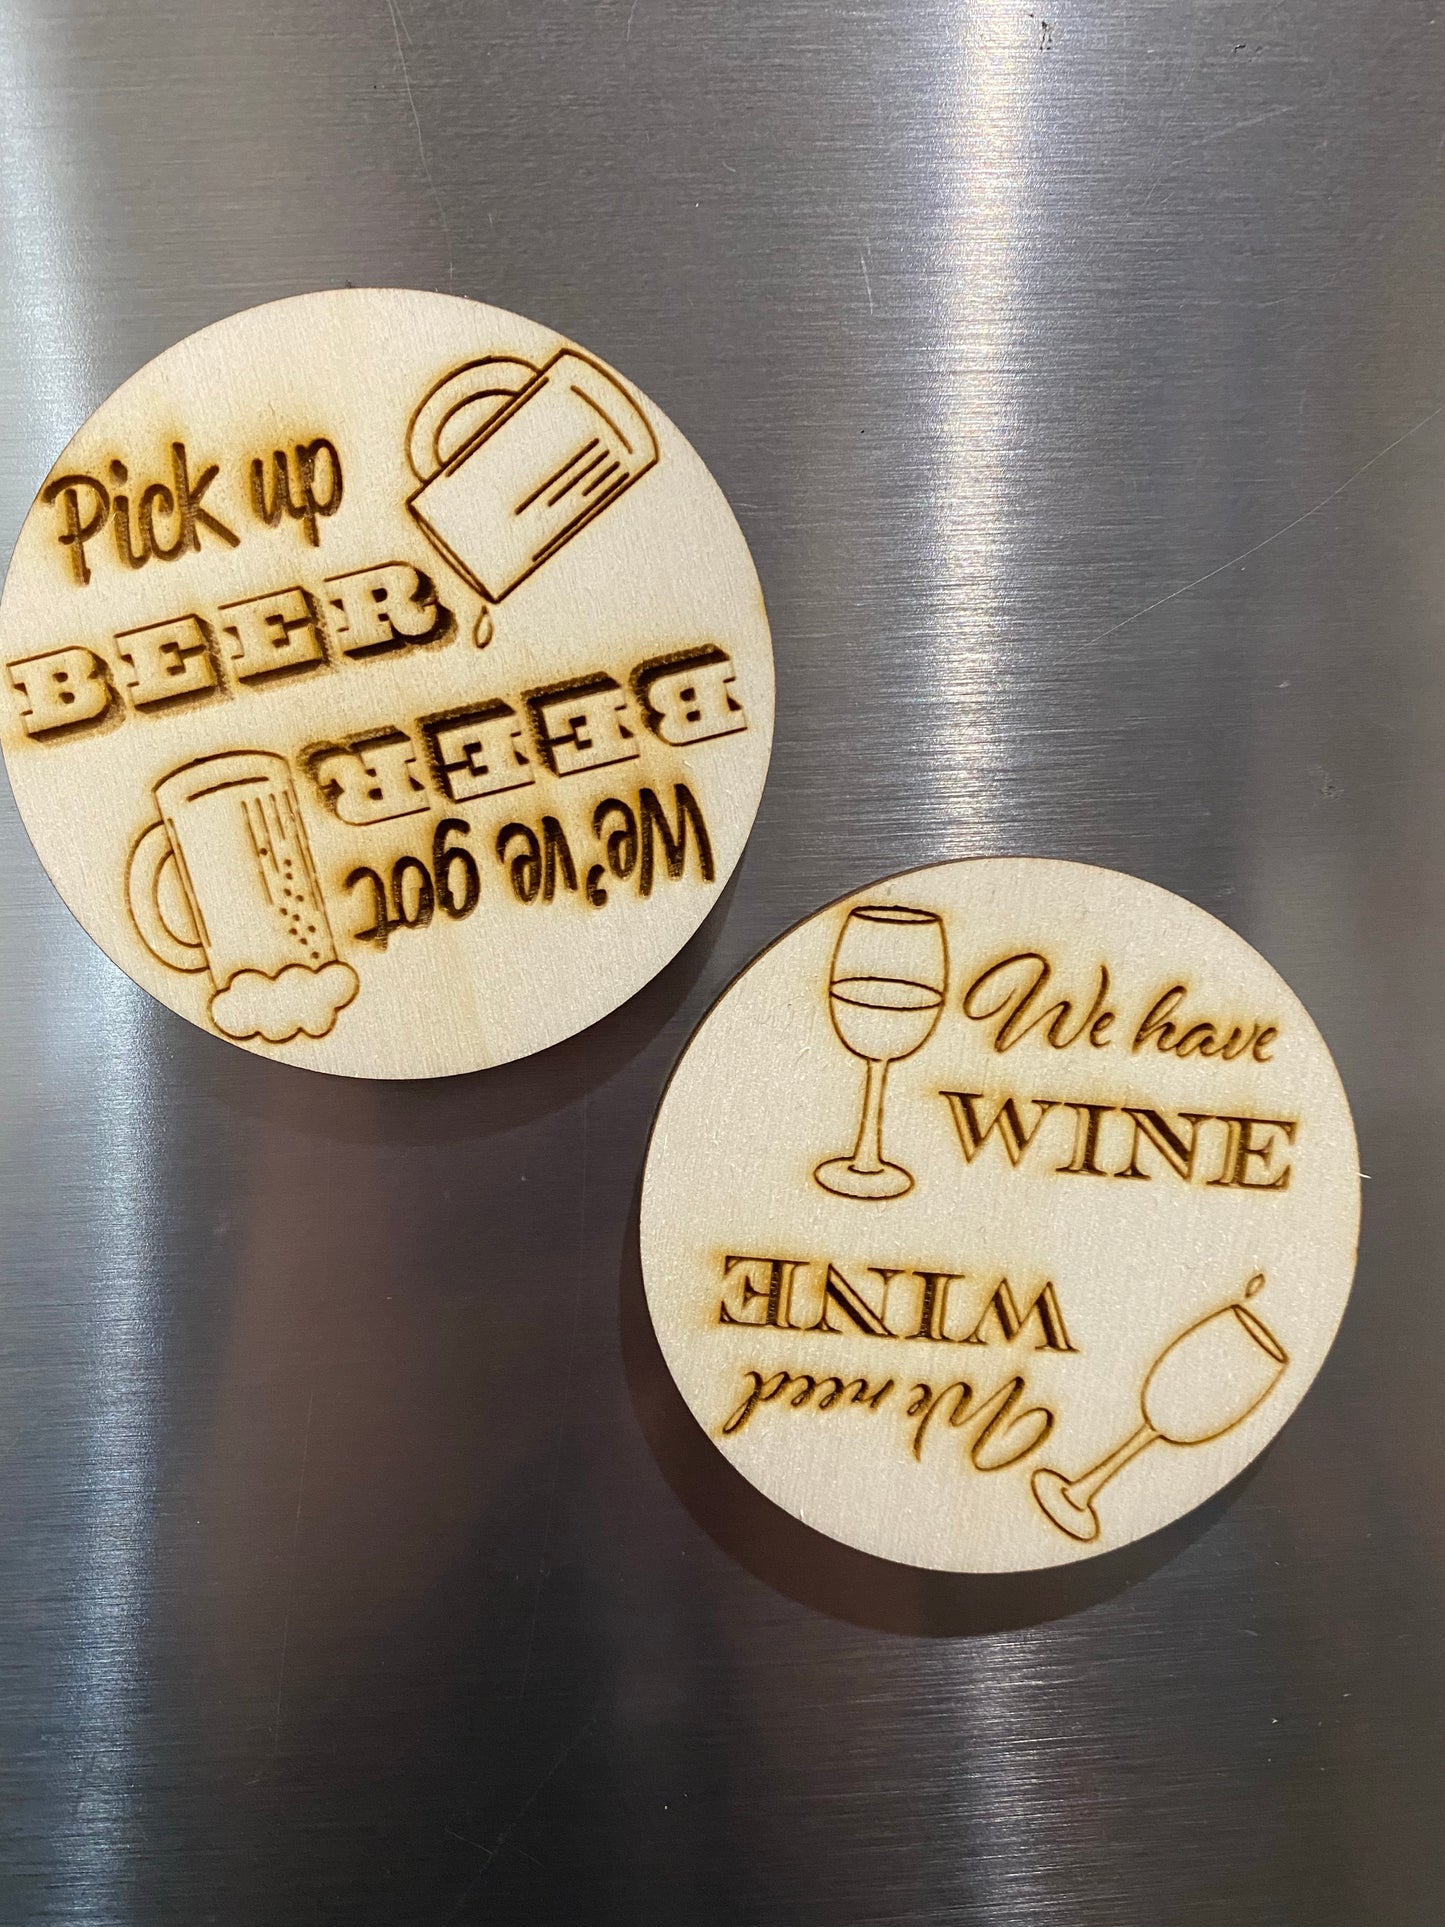 Beer & wine reminder magnets